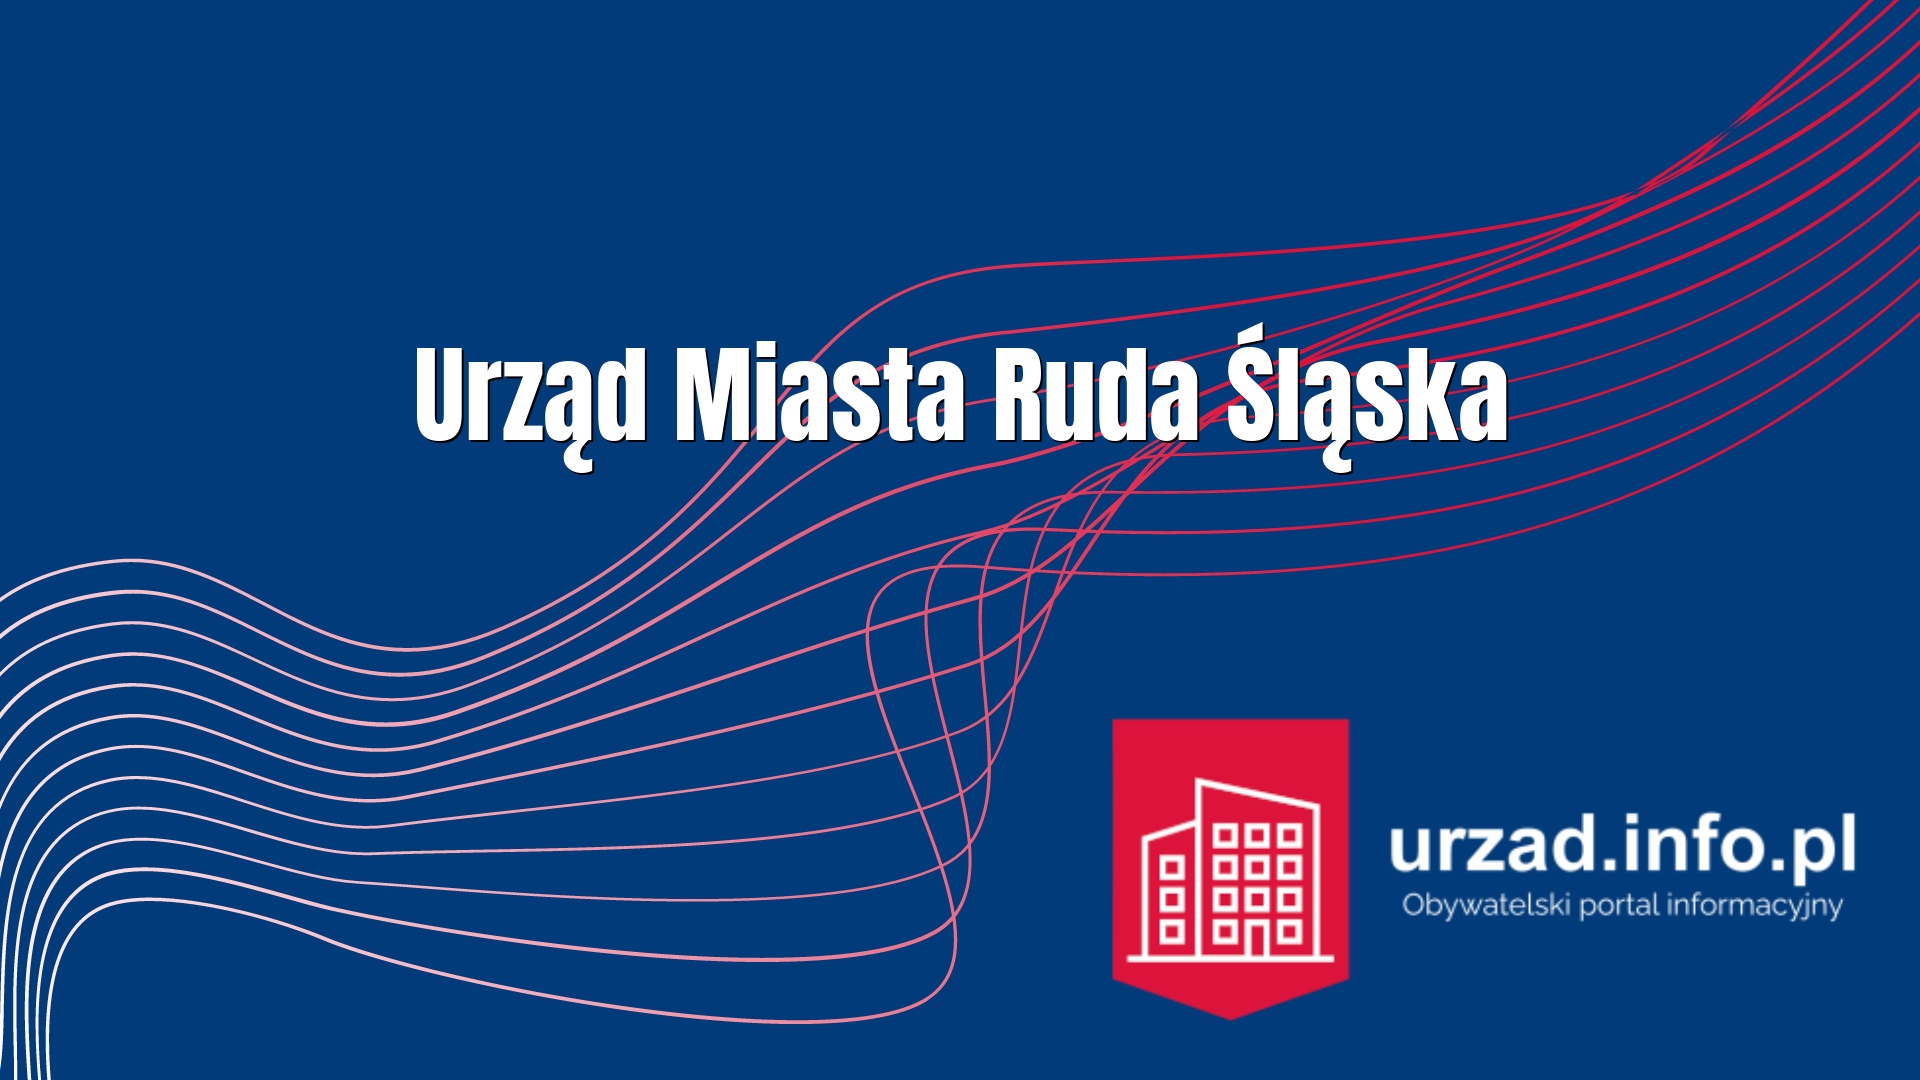 Urząd Miasta Ruda Śląska